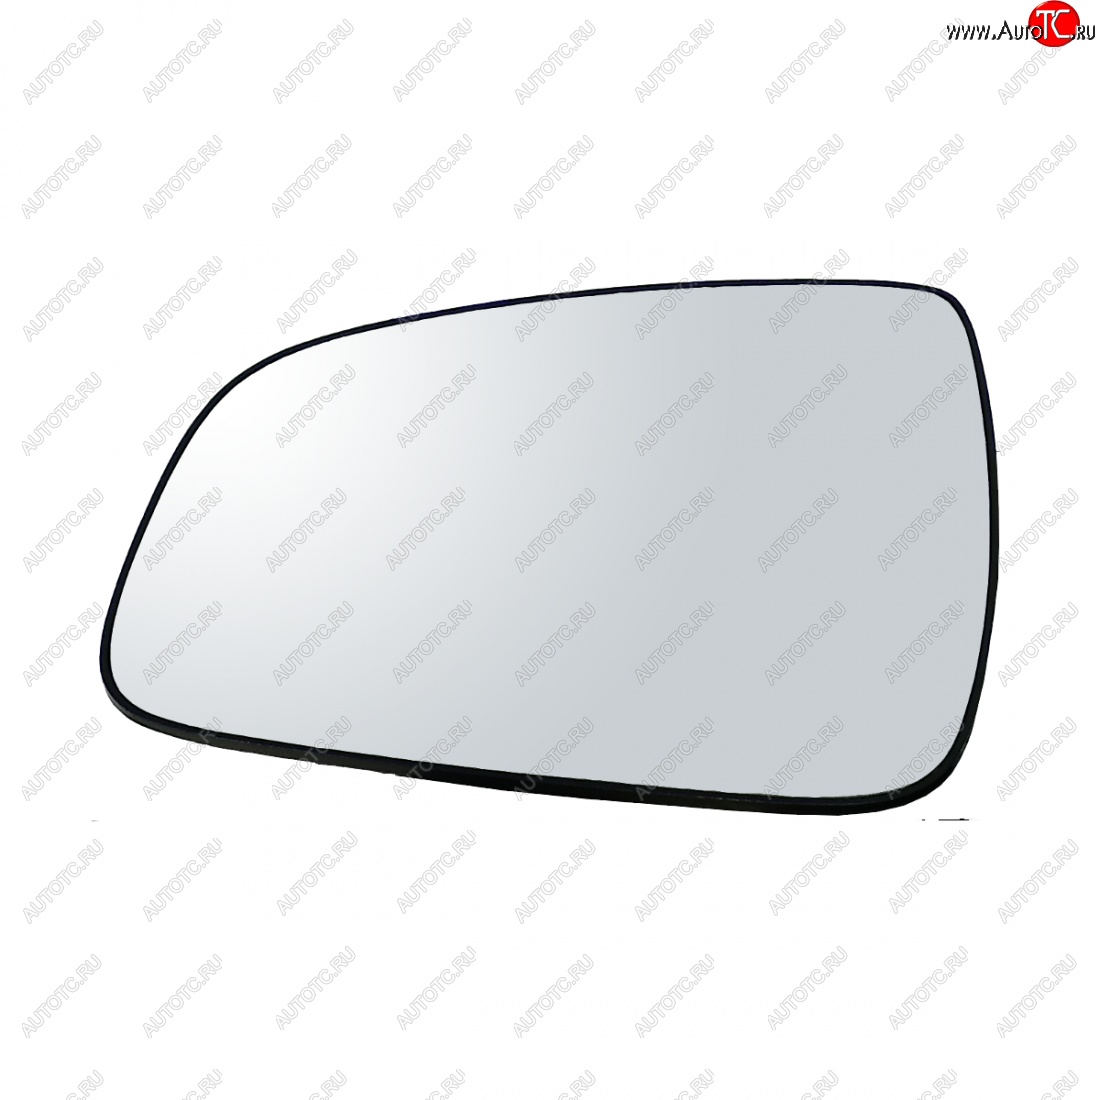 259 р. Левый зеркальный элемент AutoBlik2 Renault Sandero (BS) (2009-2014) (без антибликового покрытия)